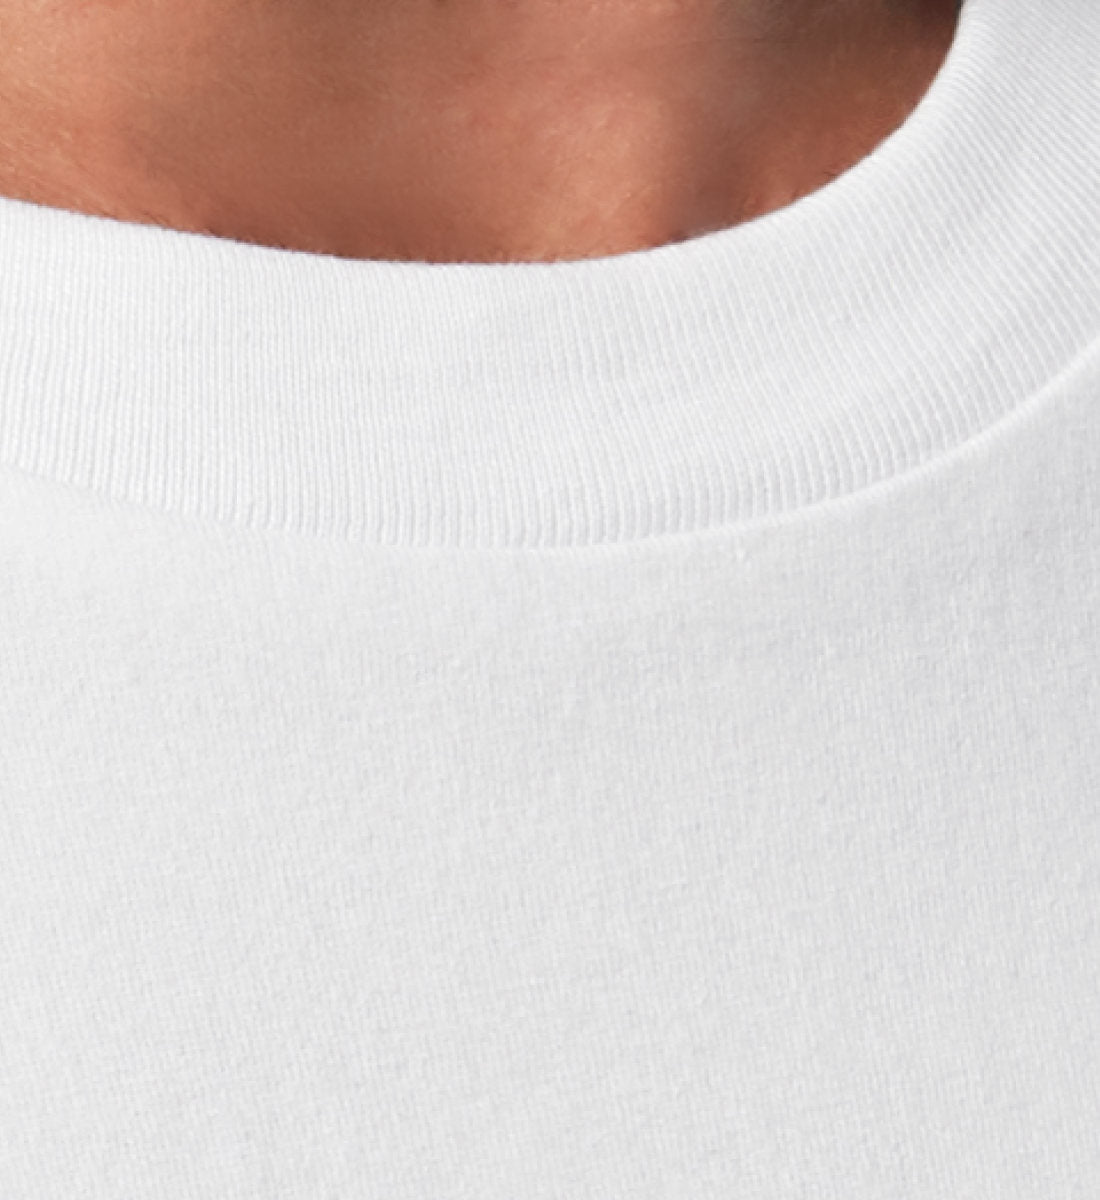 Weißes T-Shirt Unisex Relaxed Fit für Frauen und Männer bedruckt mit dem Design der Roger Rockawoo Kollektion BMX Bunny Hop frohe Ostern